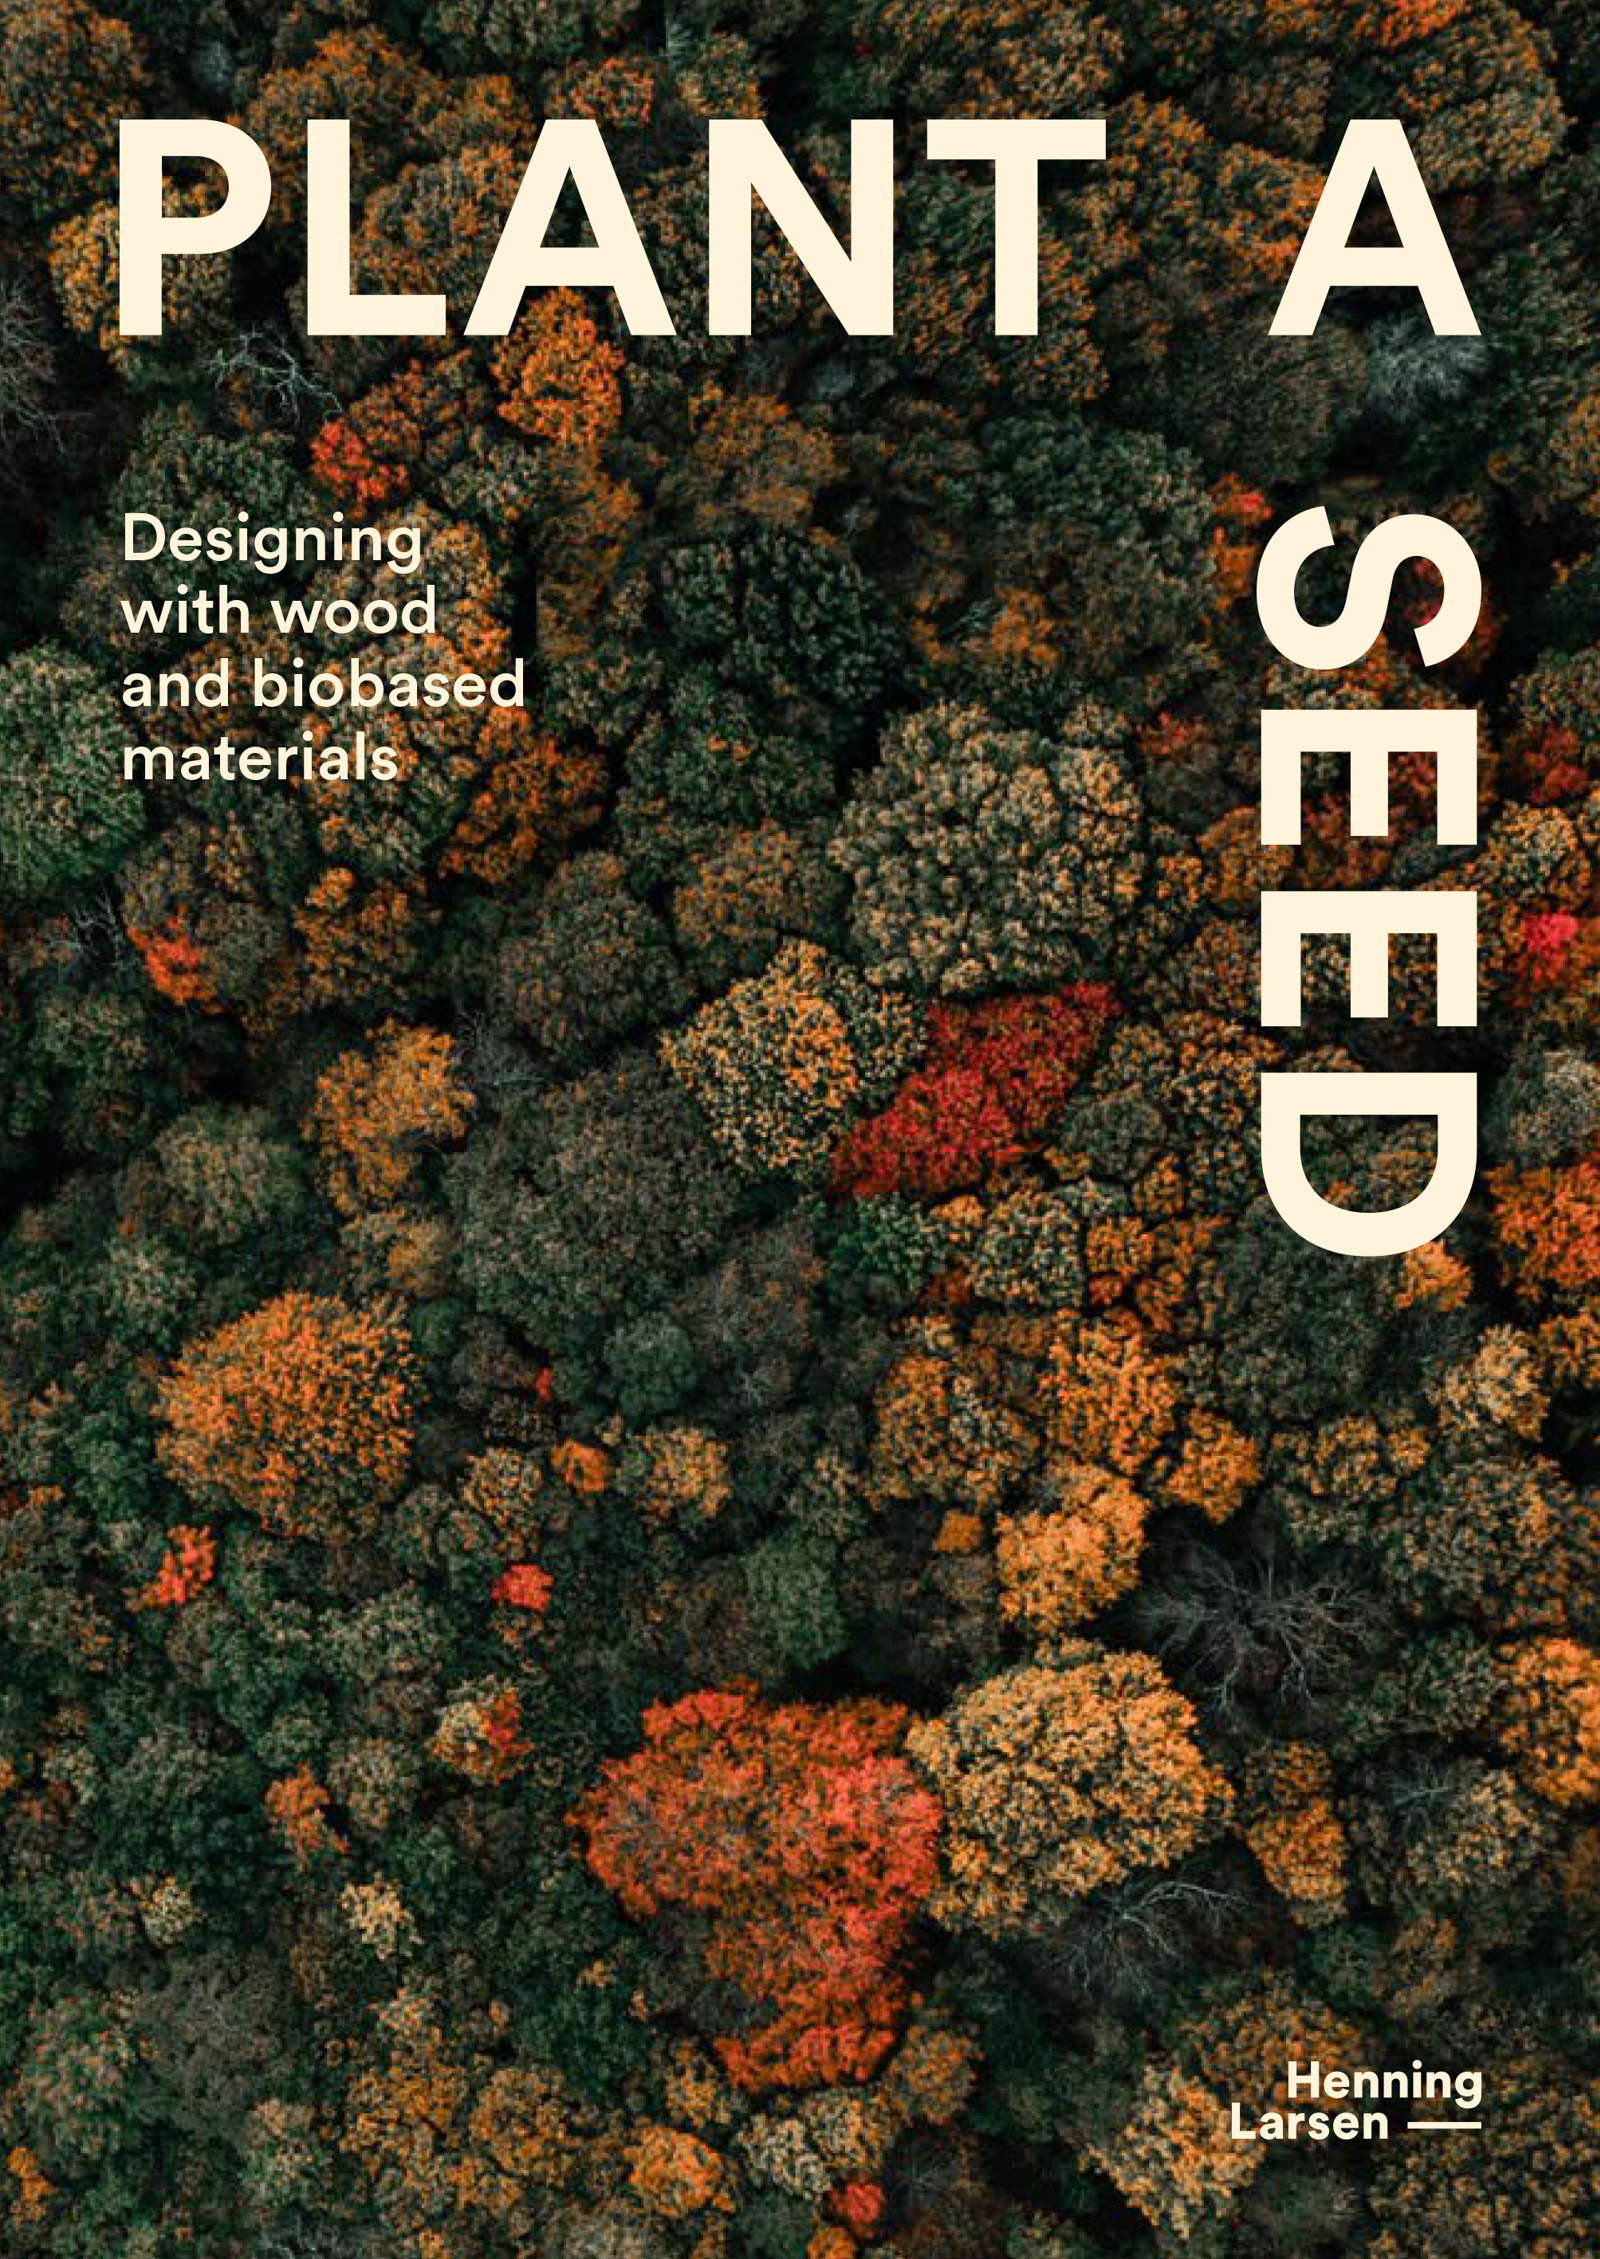 Forsiden på publikasjonen Plan a seed, bilde av tretopper i flere farger og tekst.